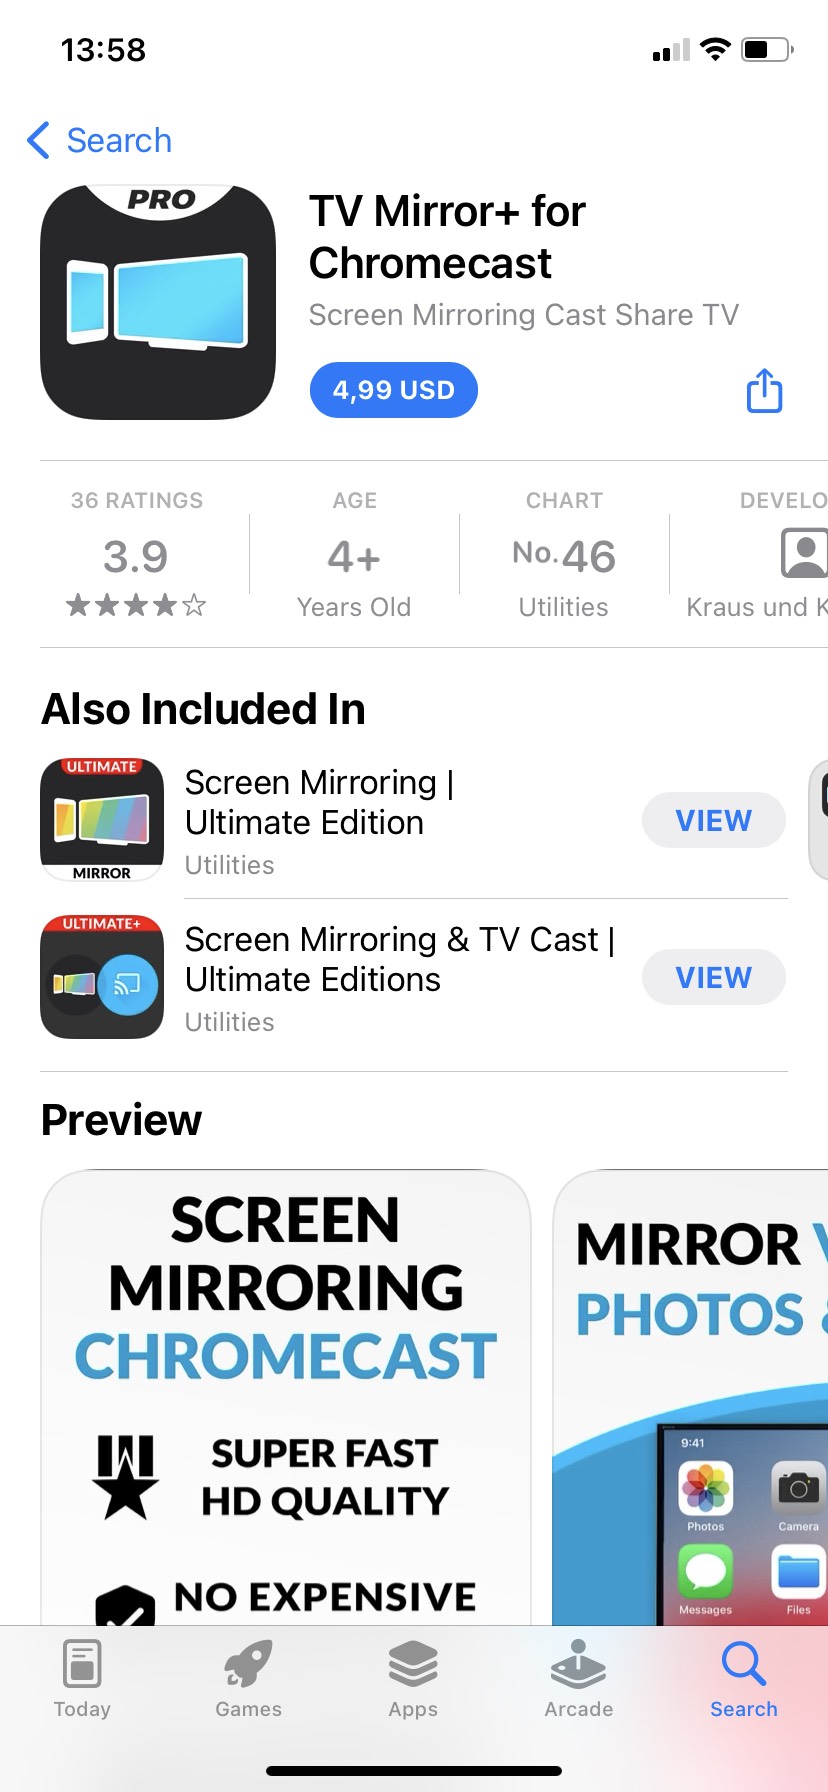 TV Mirror+ for Chromecast screenshots